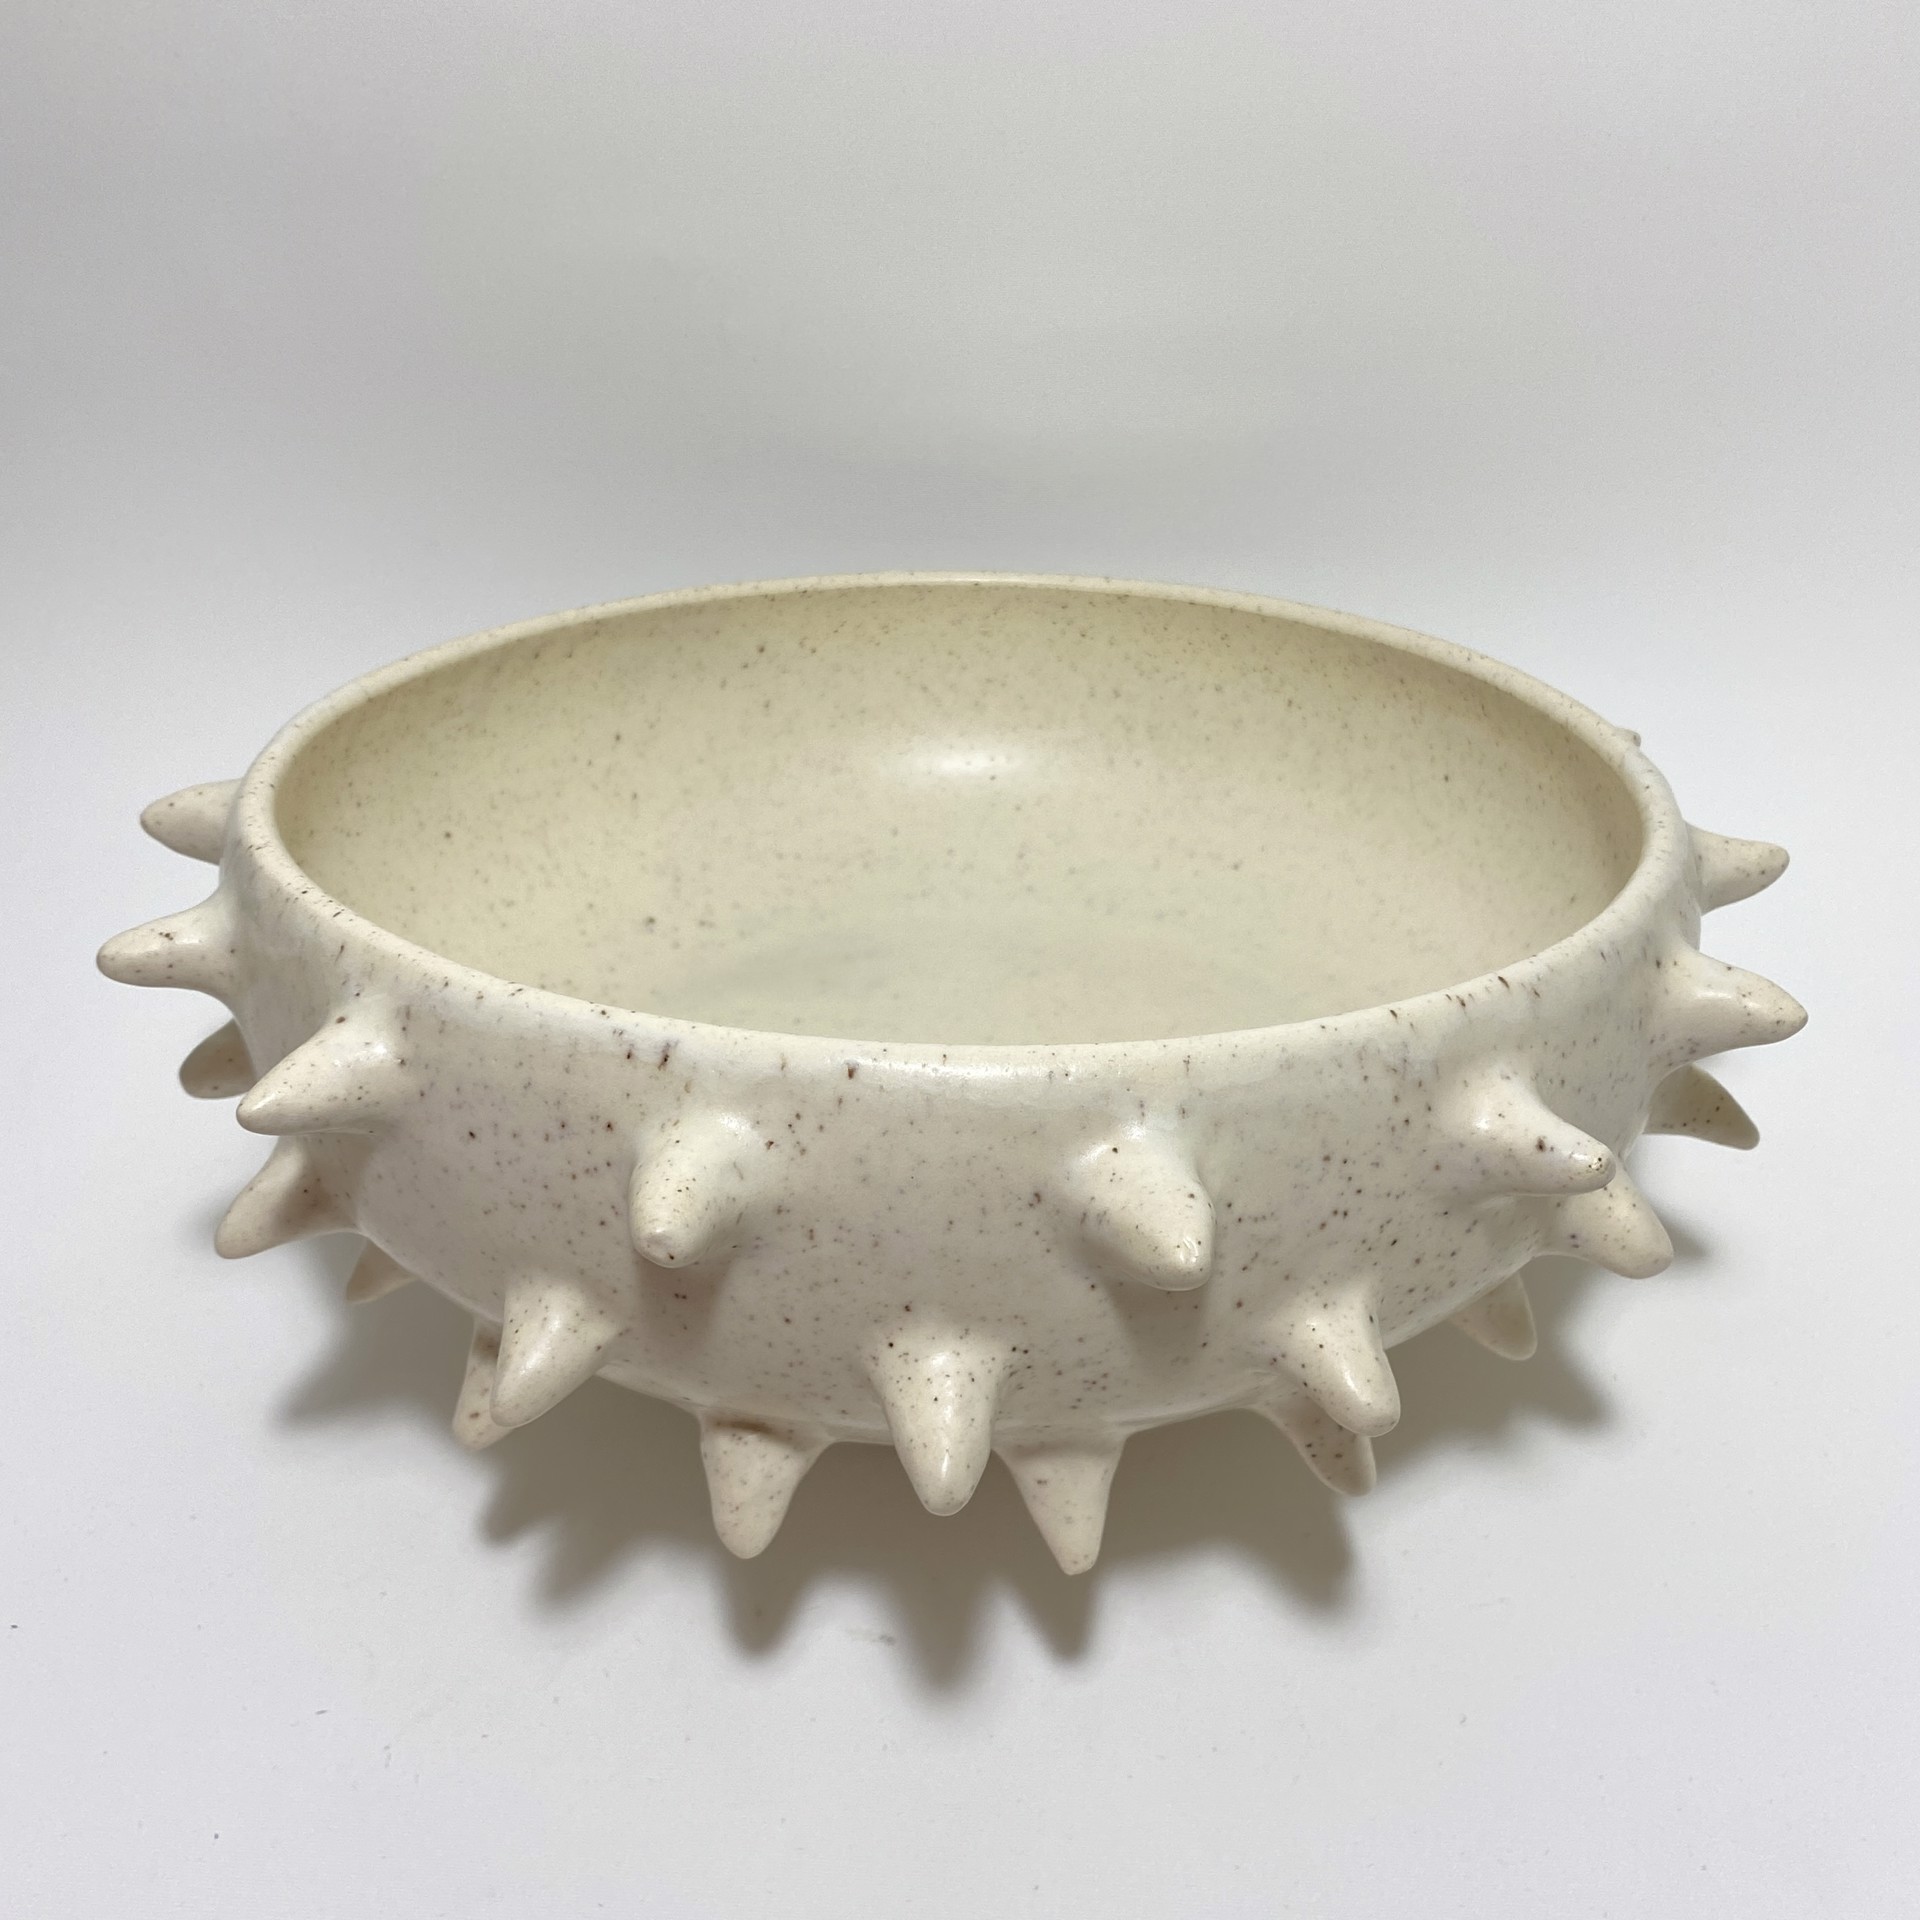 Spike Bowl by Darshana Patel